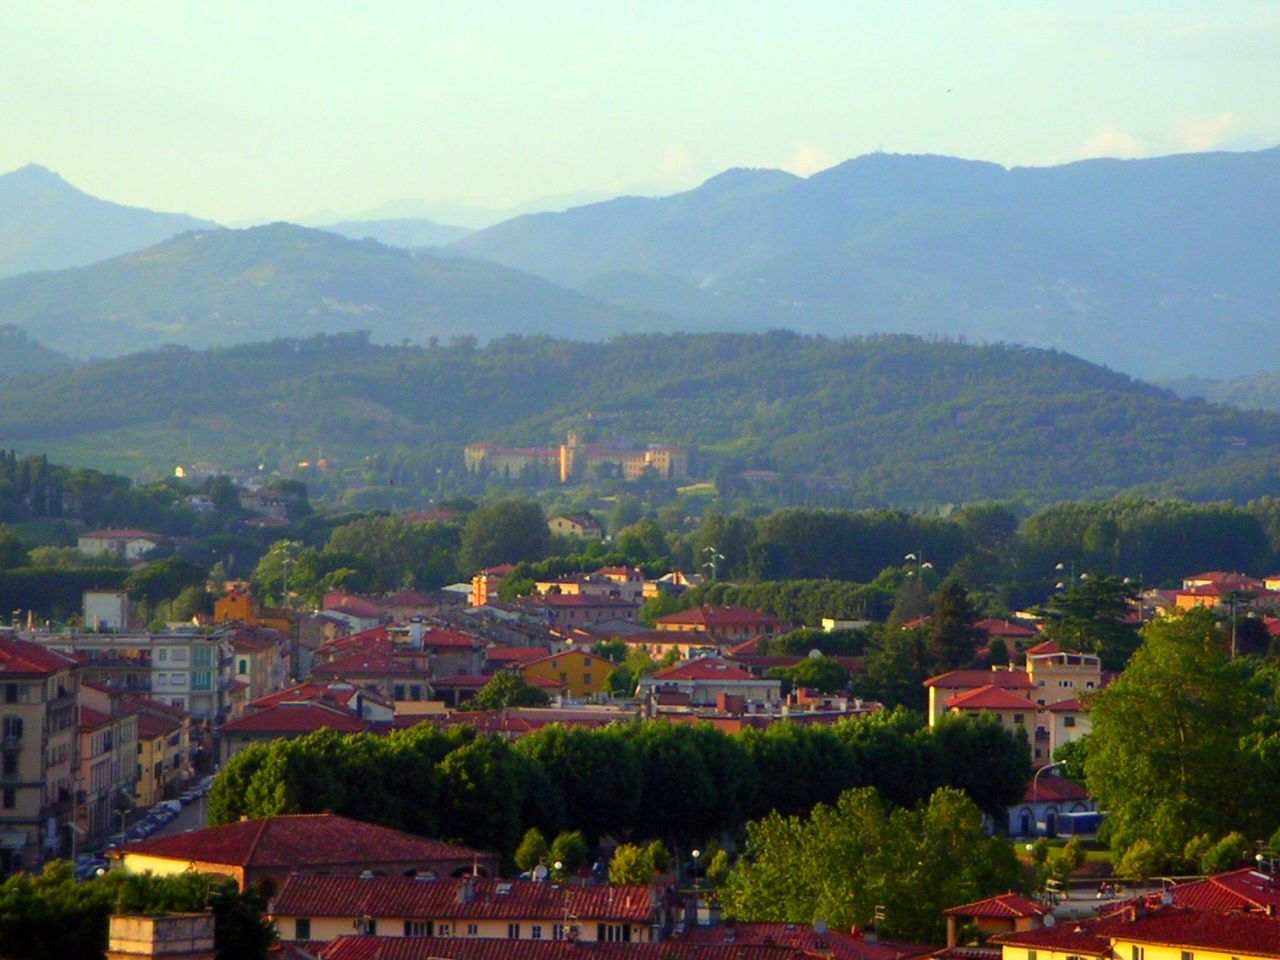 Beautiful views of #Tuscany in Lucca https://t.co/U8LS7ffxEu